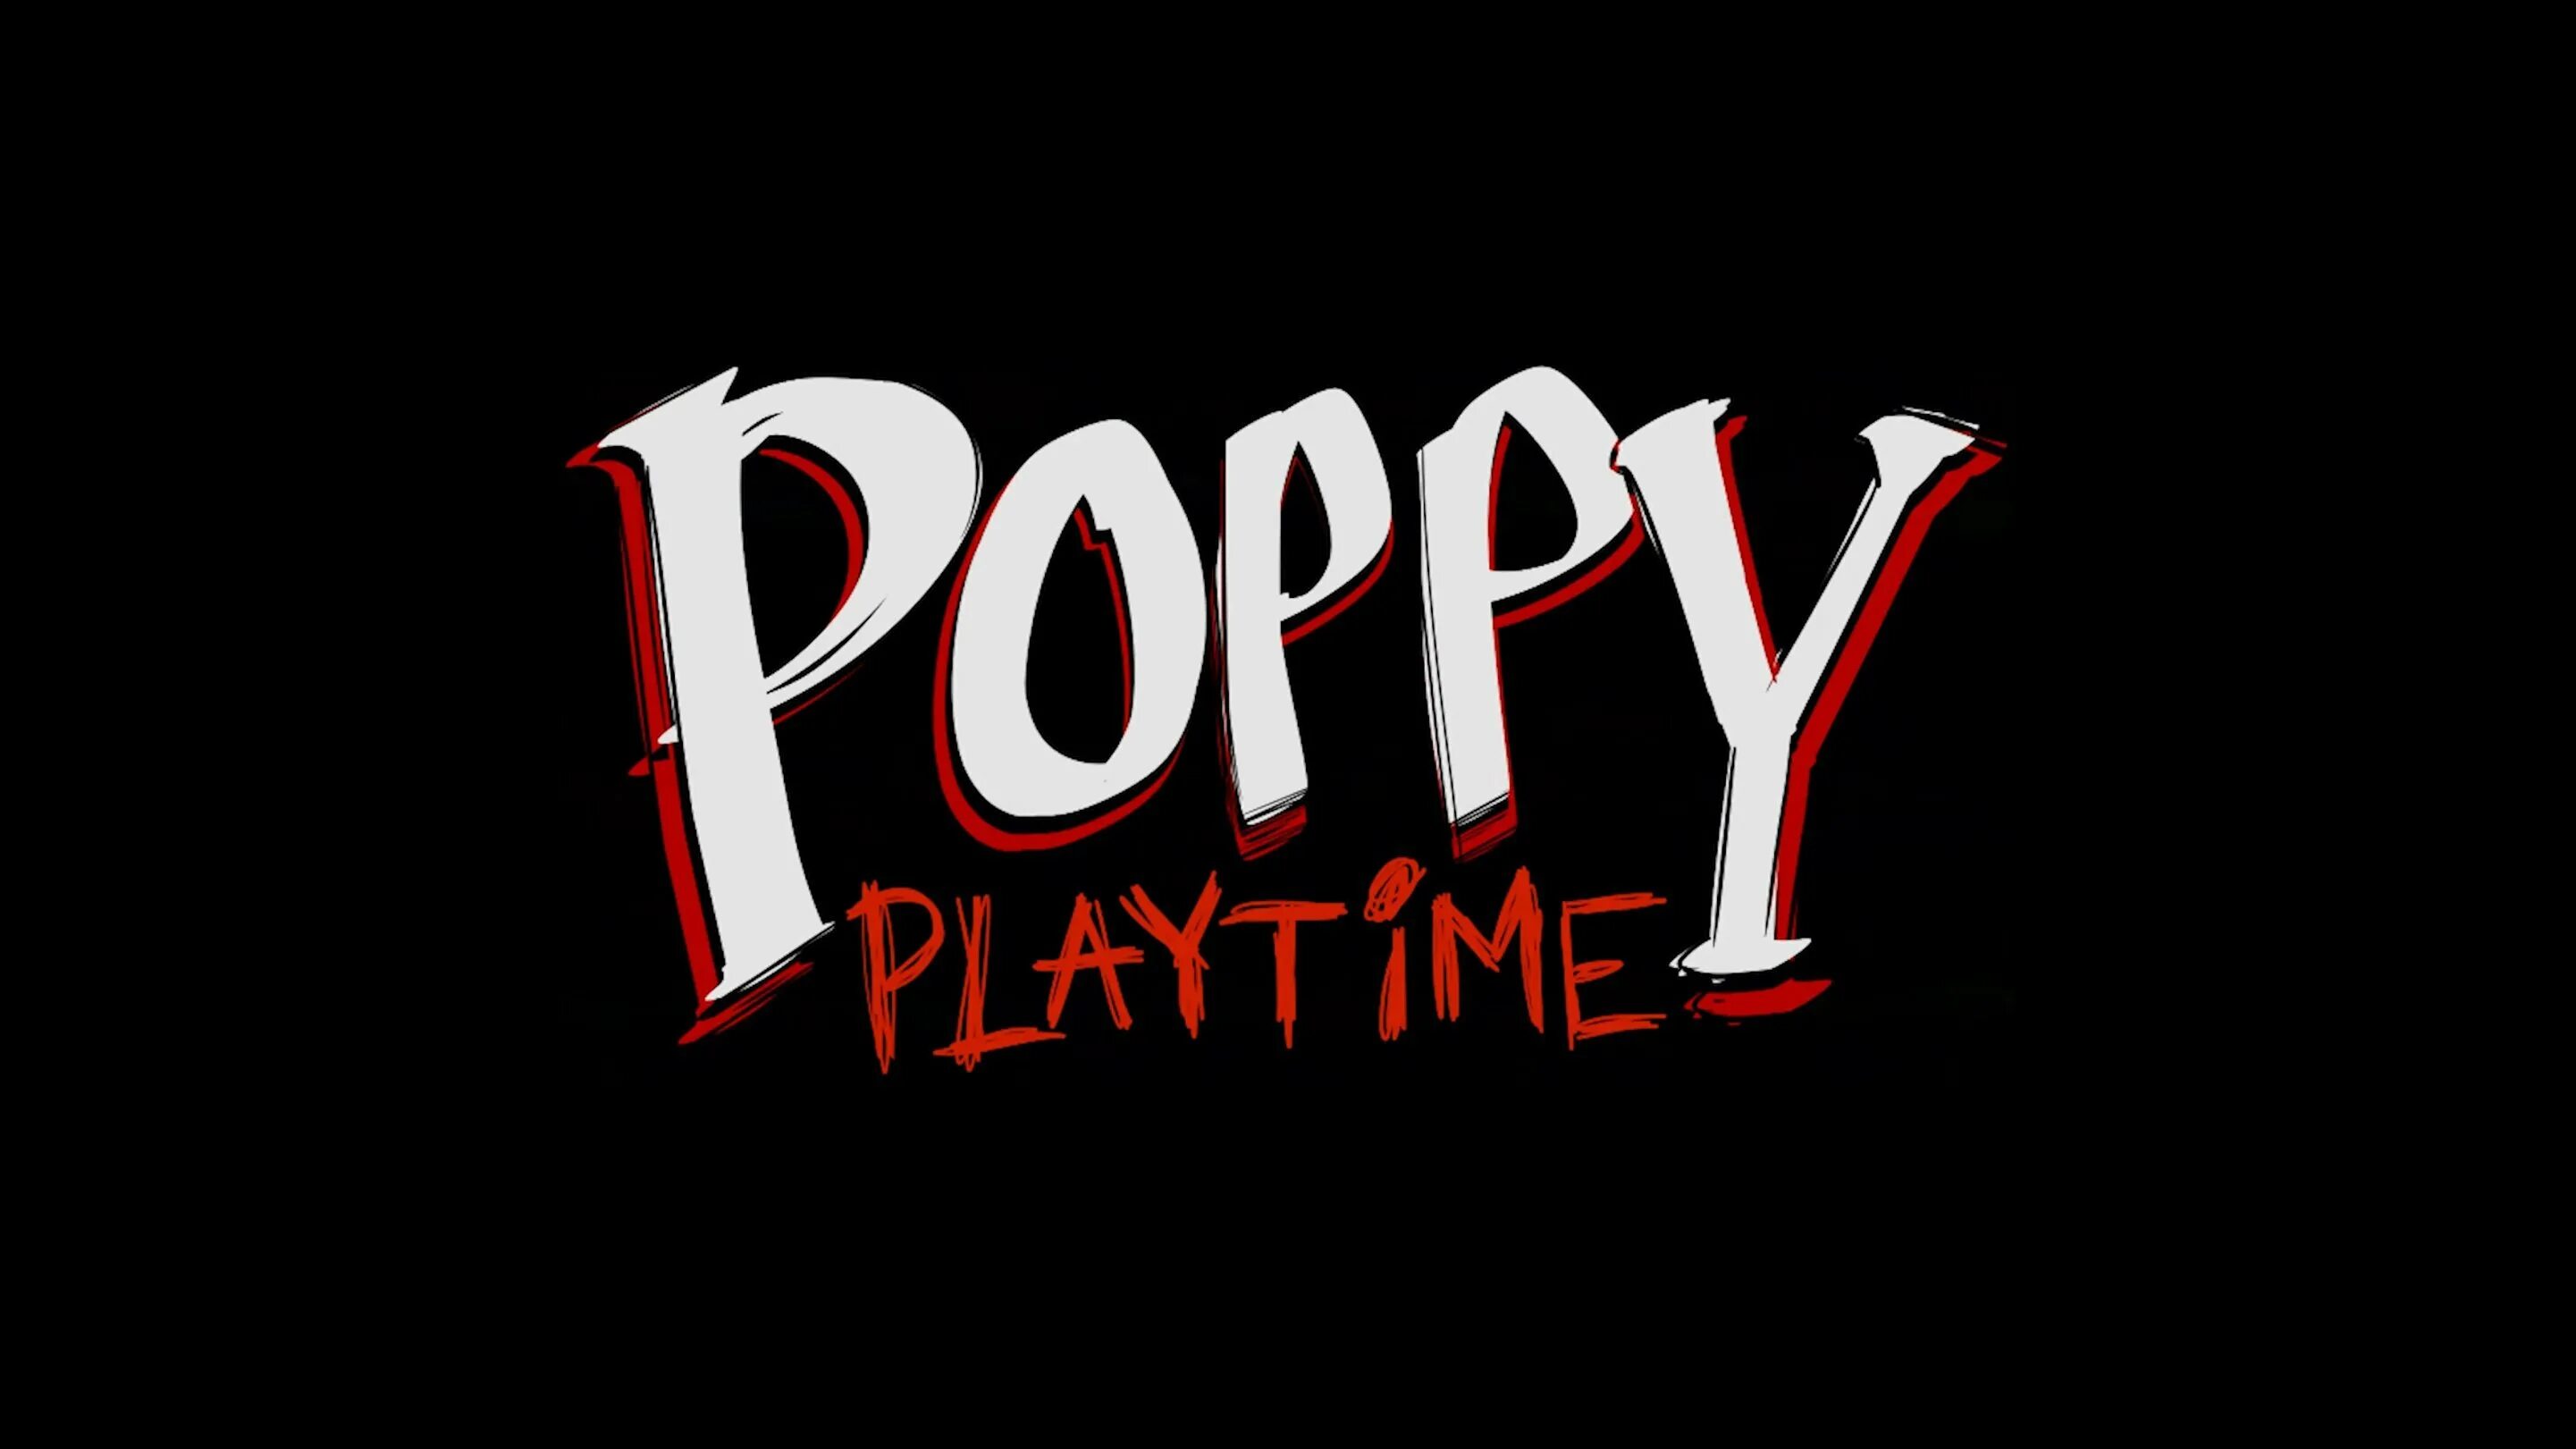 Poppy playtime 18 плюс. Poppy Playtime. Poppy Playtime надпись. Poppy Playtime 2 надпись. Poppy Playtime 1.